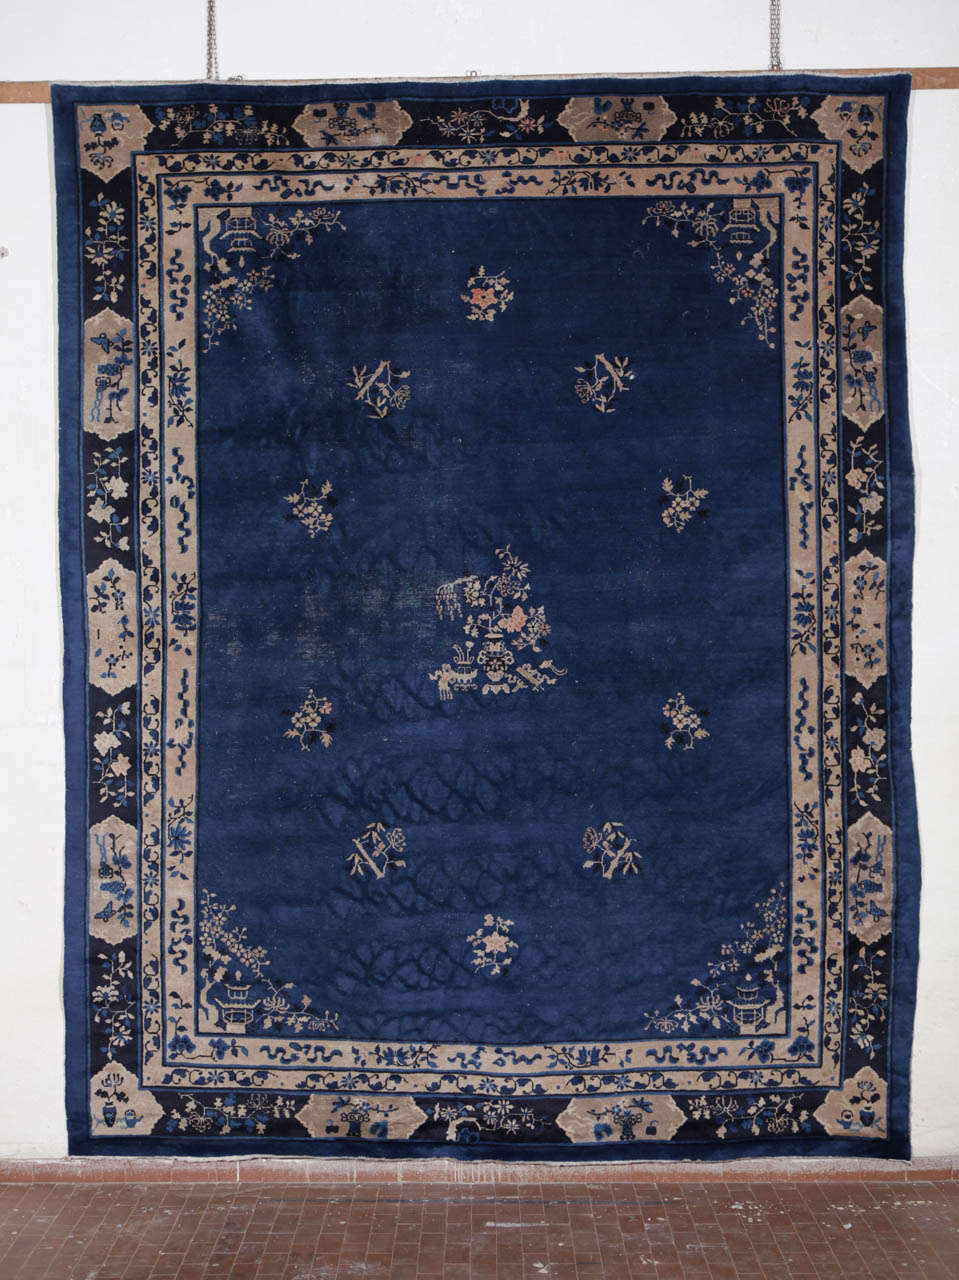 Un beau tapis de Pékin bleu indigo du début du 20ème siècle.
Mesures : cm 350 x 280.